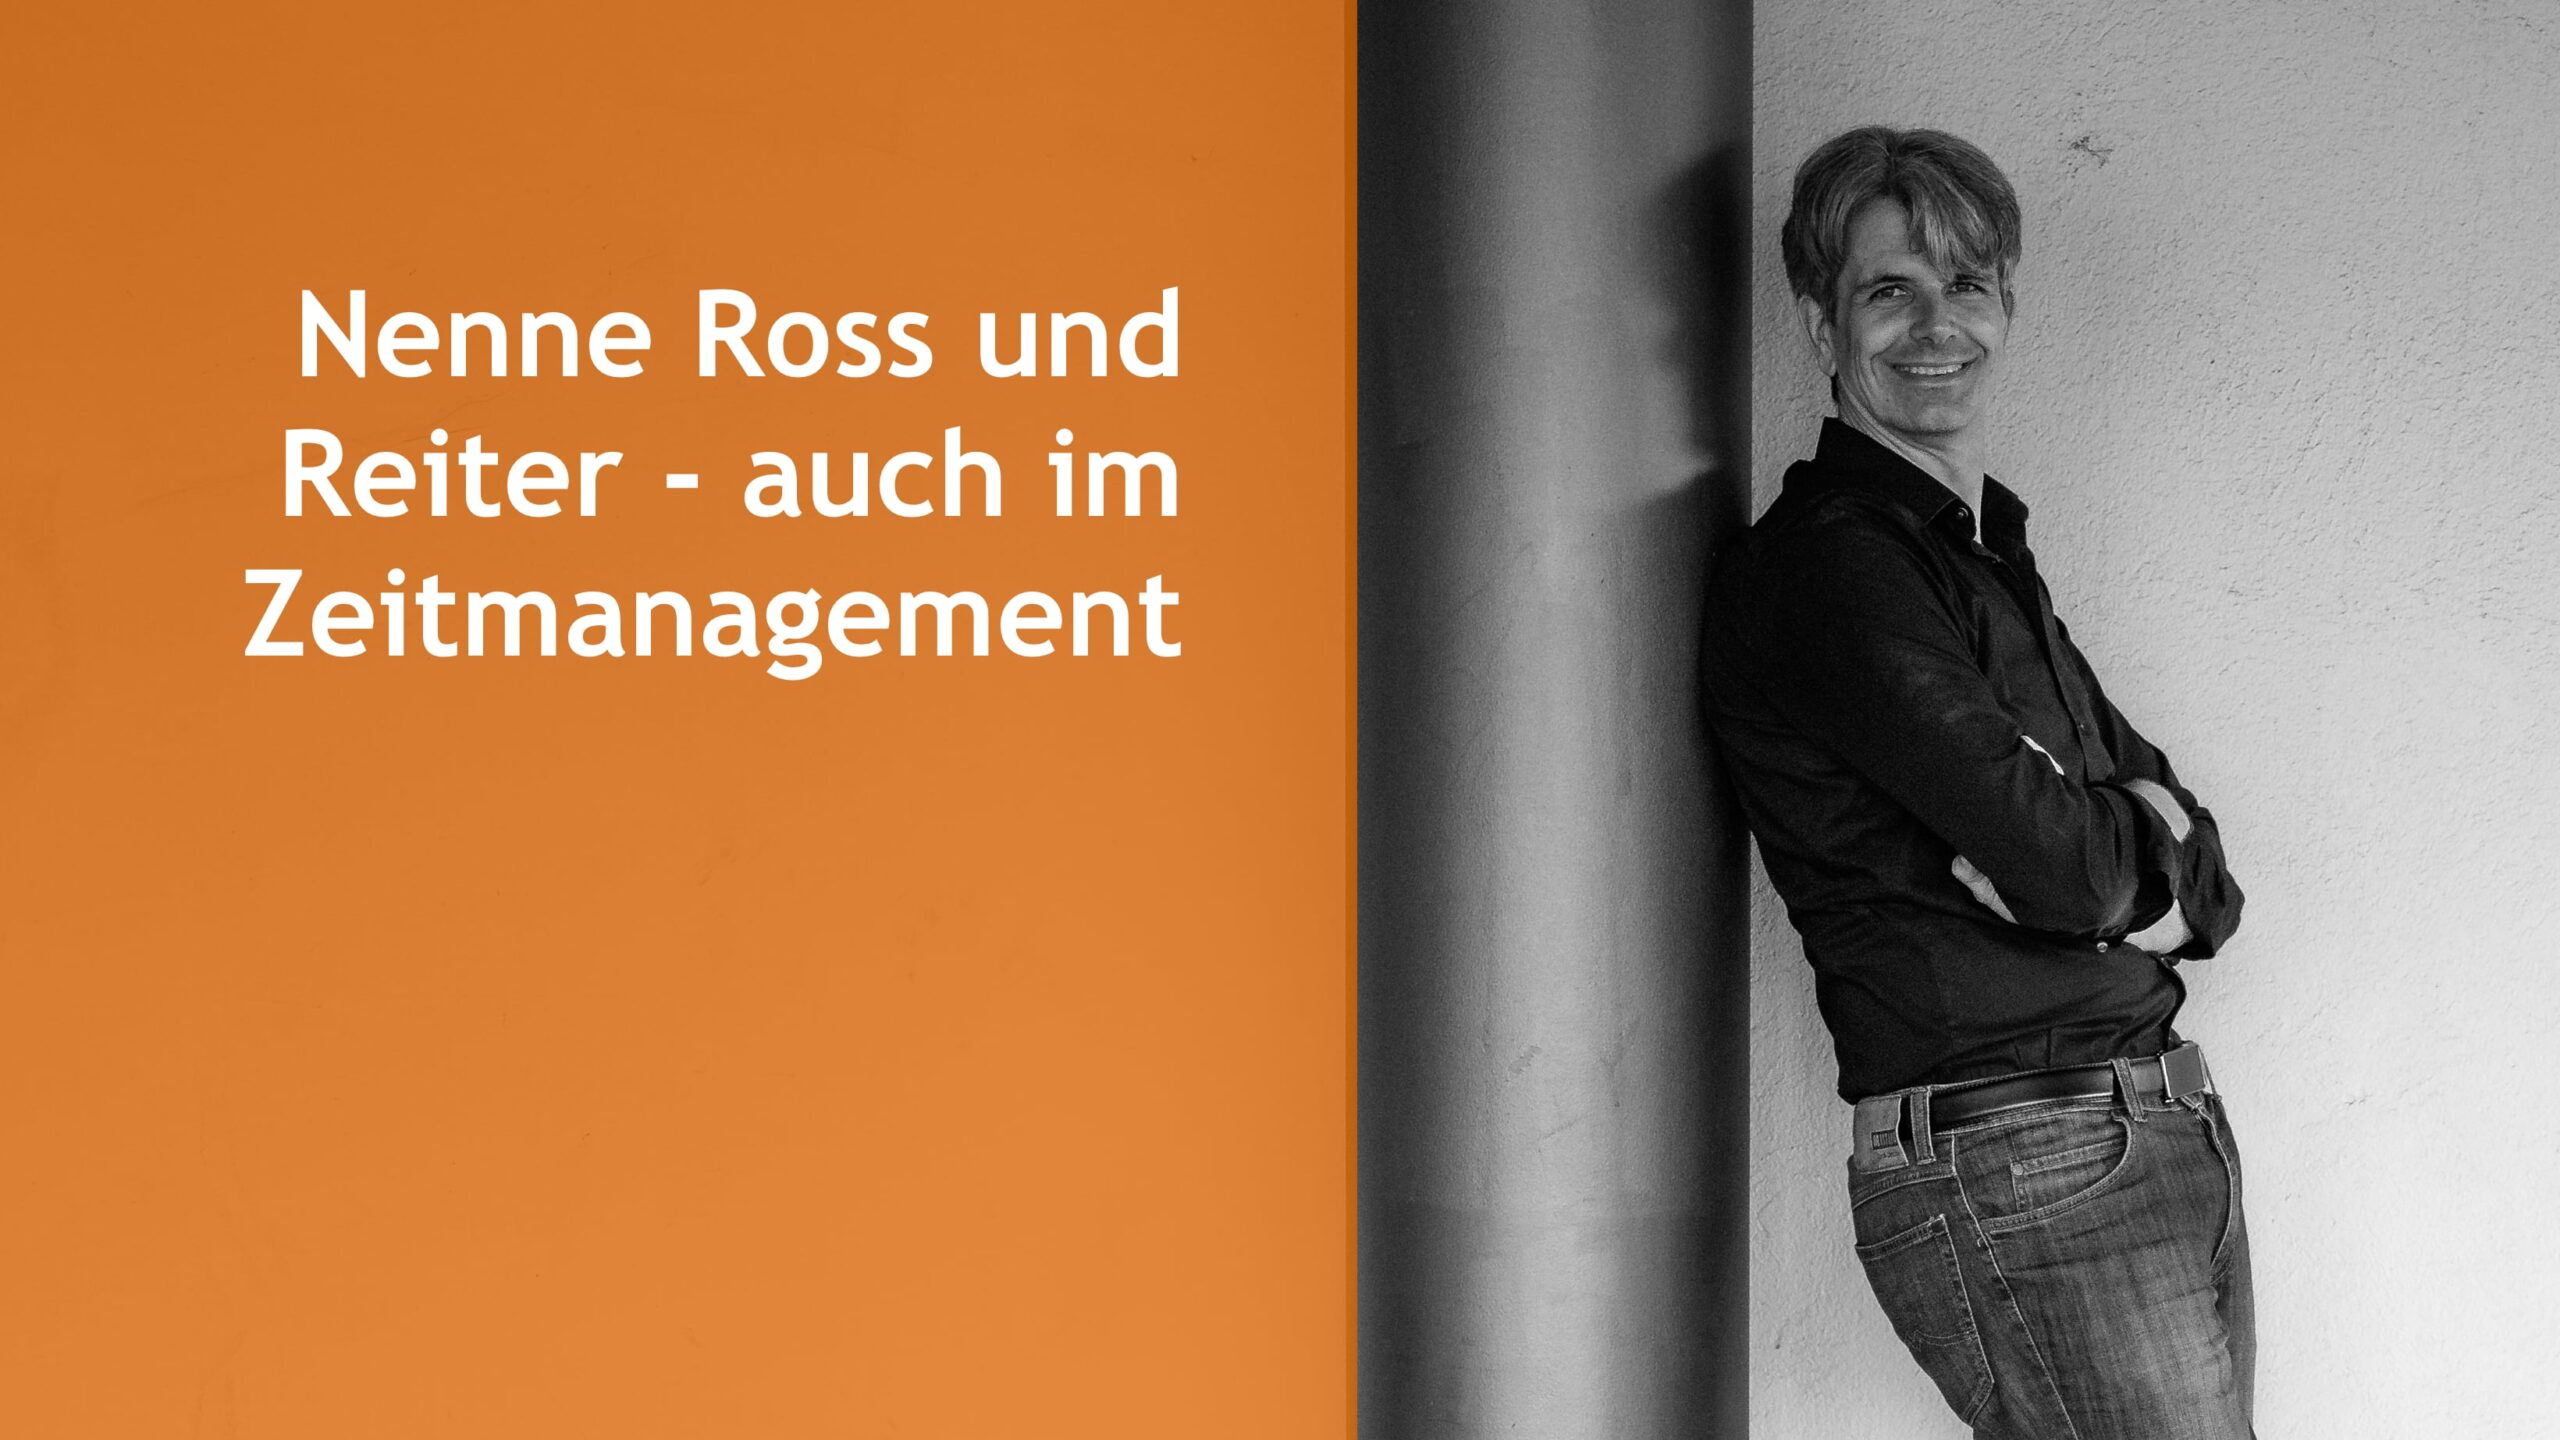 Nenne Ross und Reiter - auch im Zeitmanagement